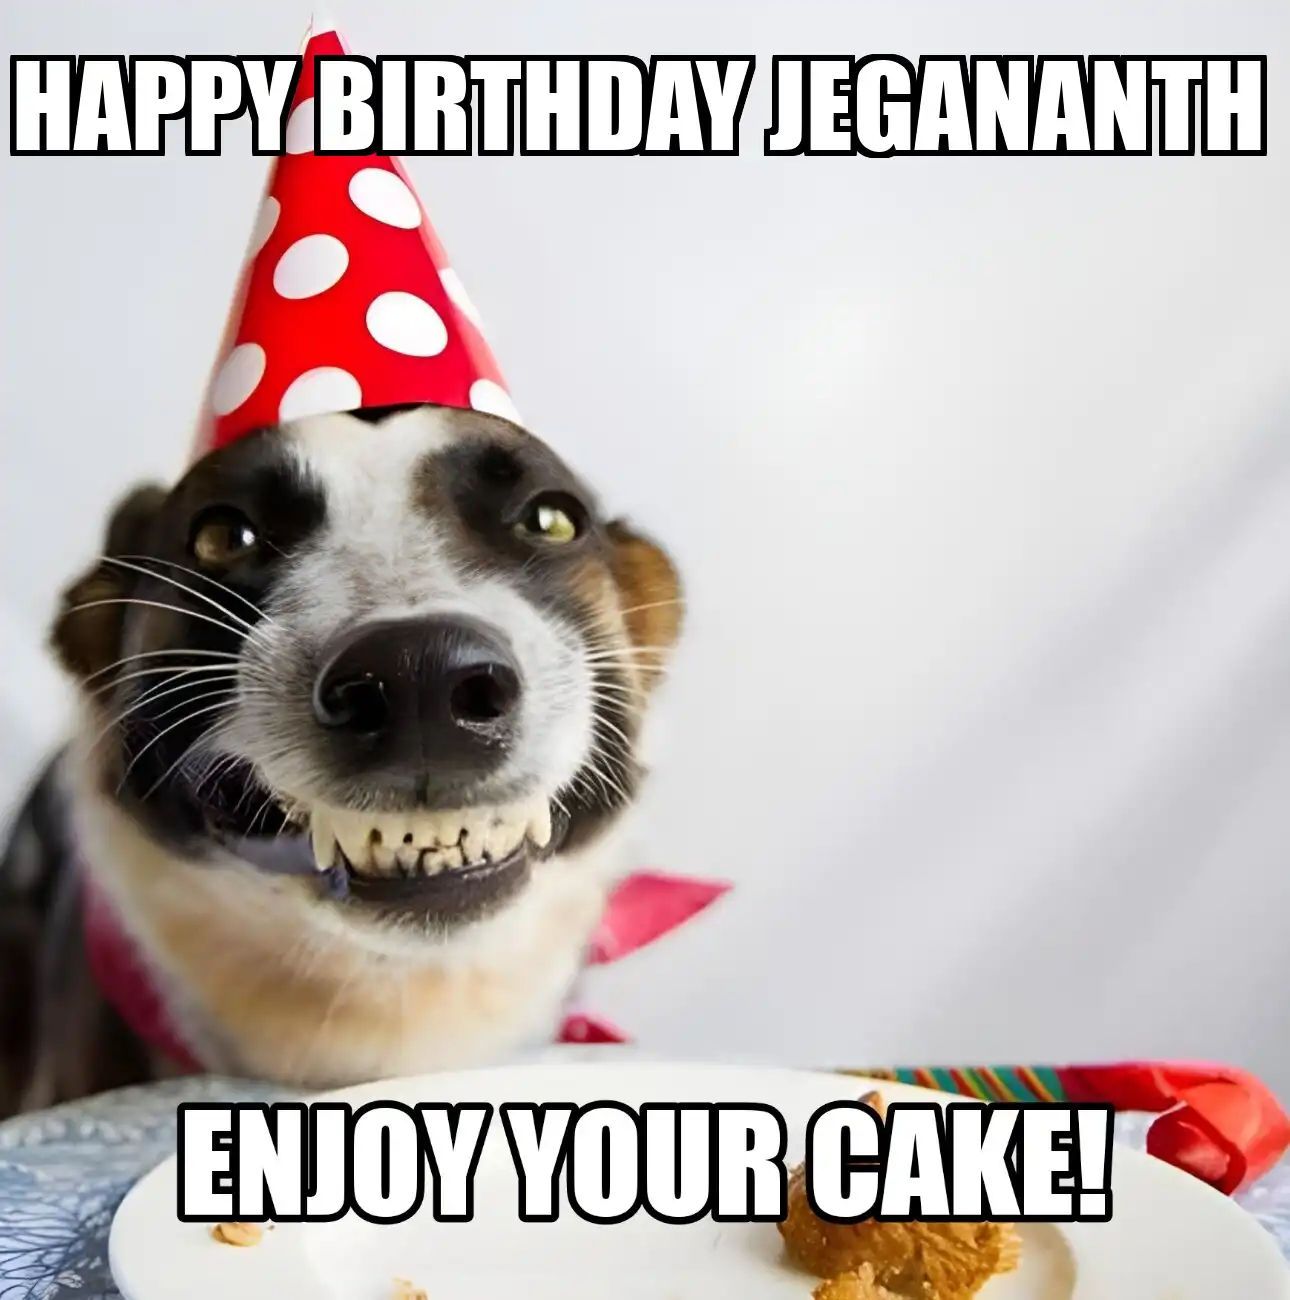 Happy Birthday Jegananth Enjoy Your Cake Dog Meme